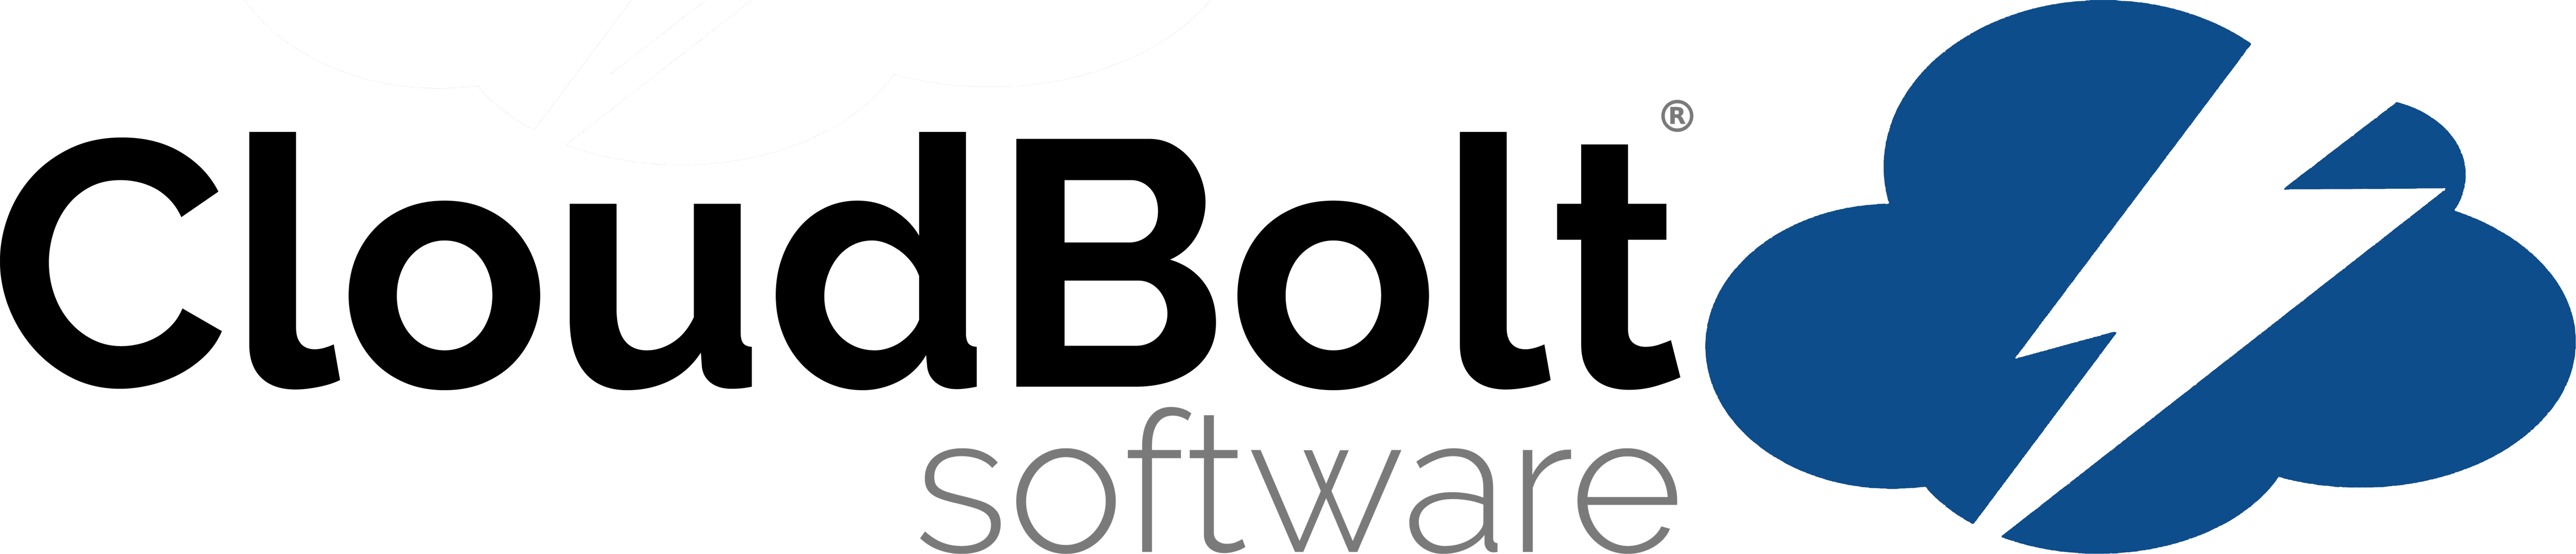 CloudBolt Software W